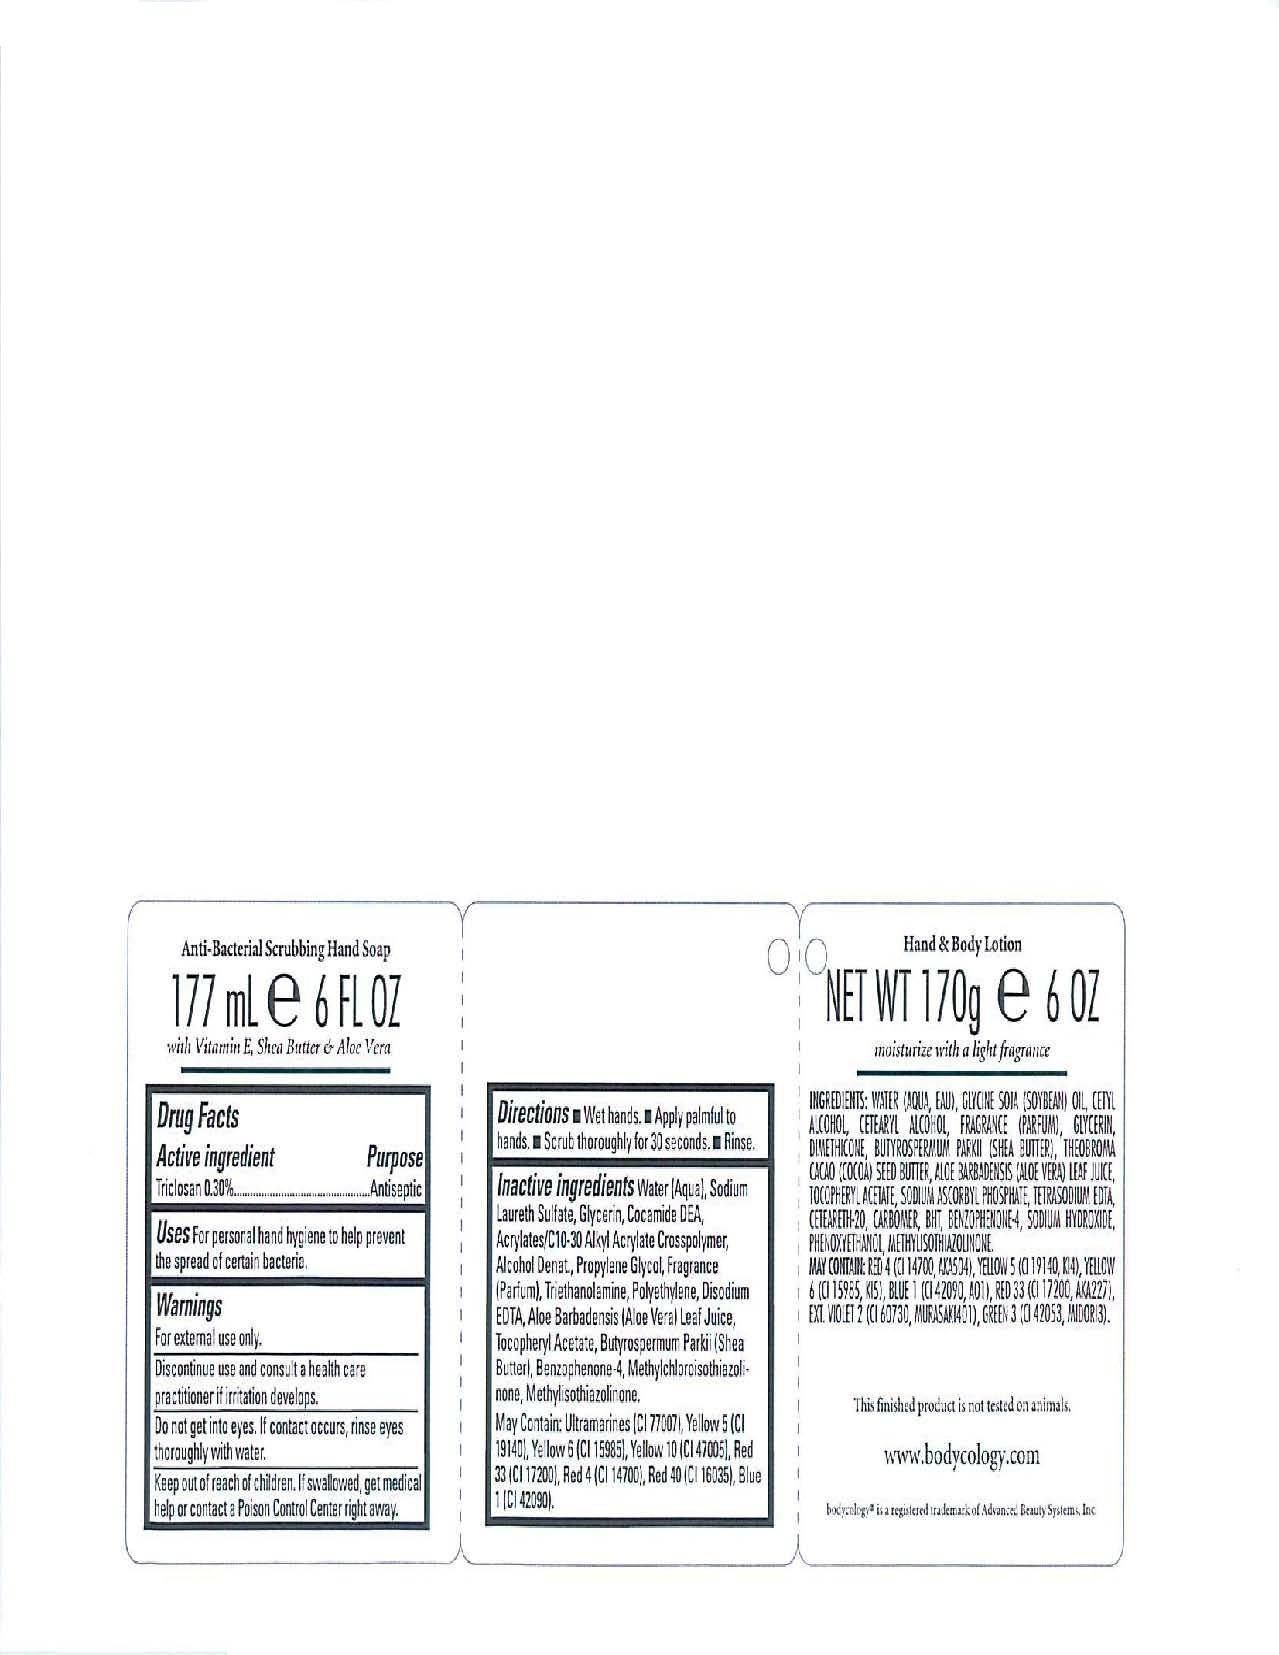 image of back label